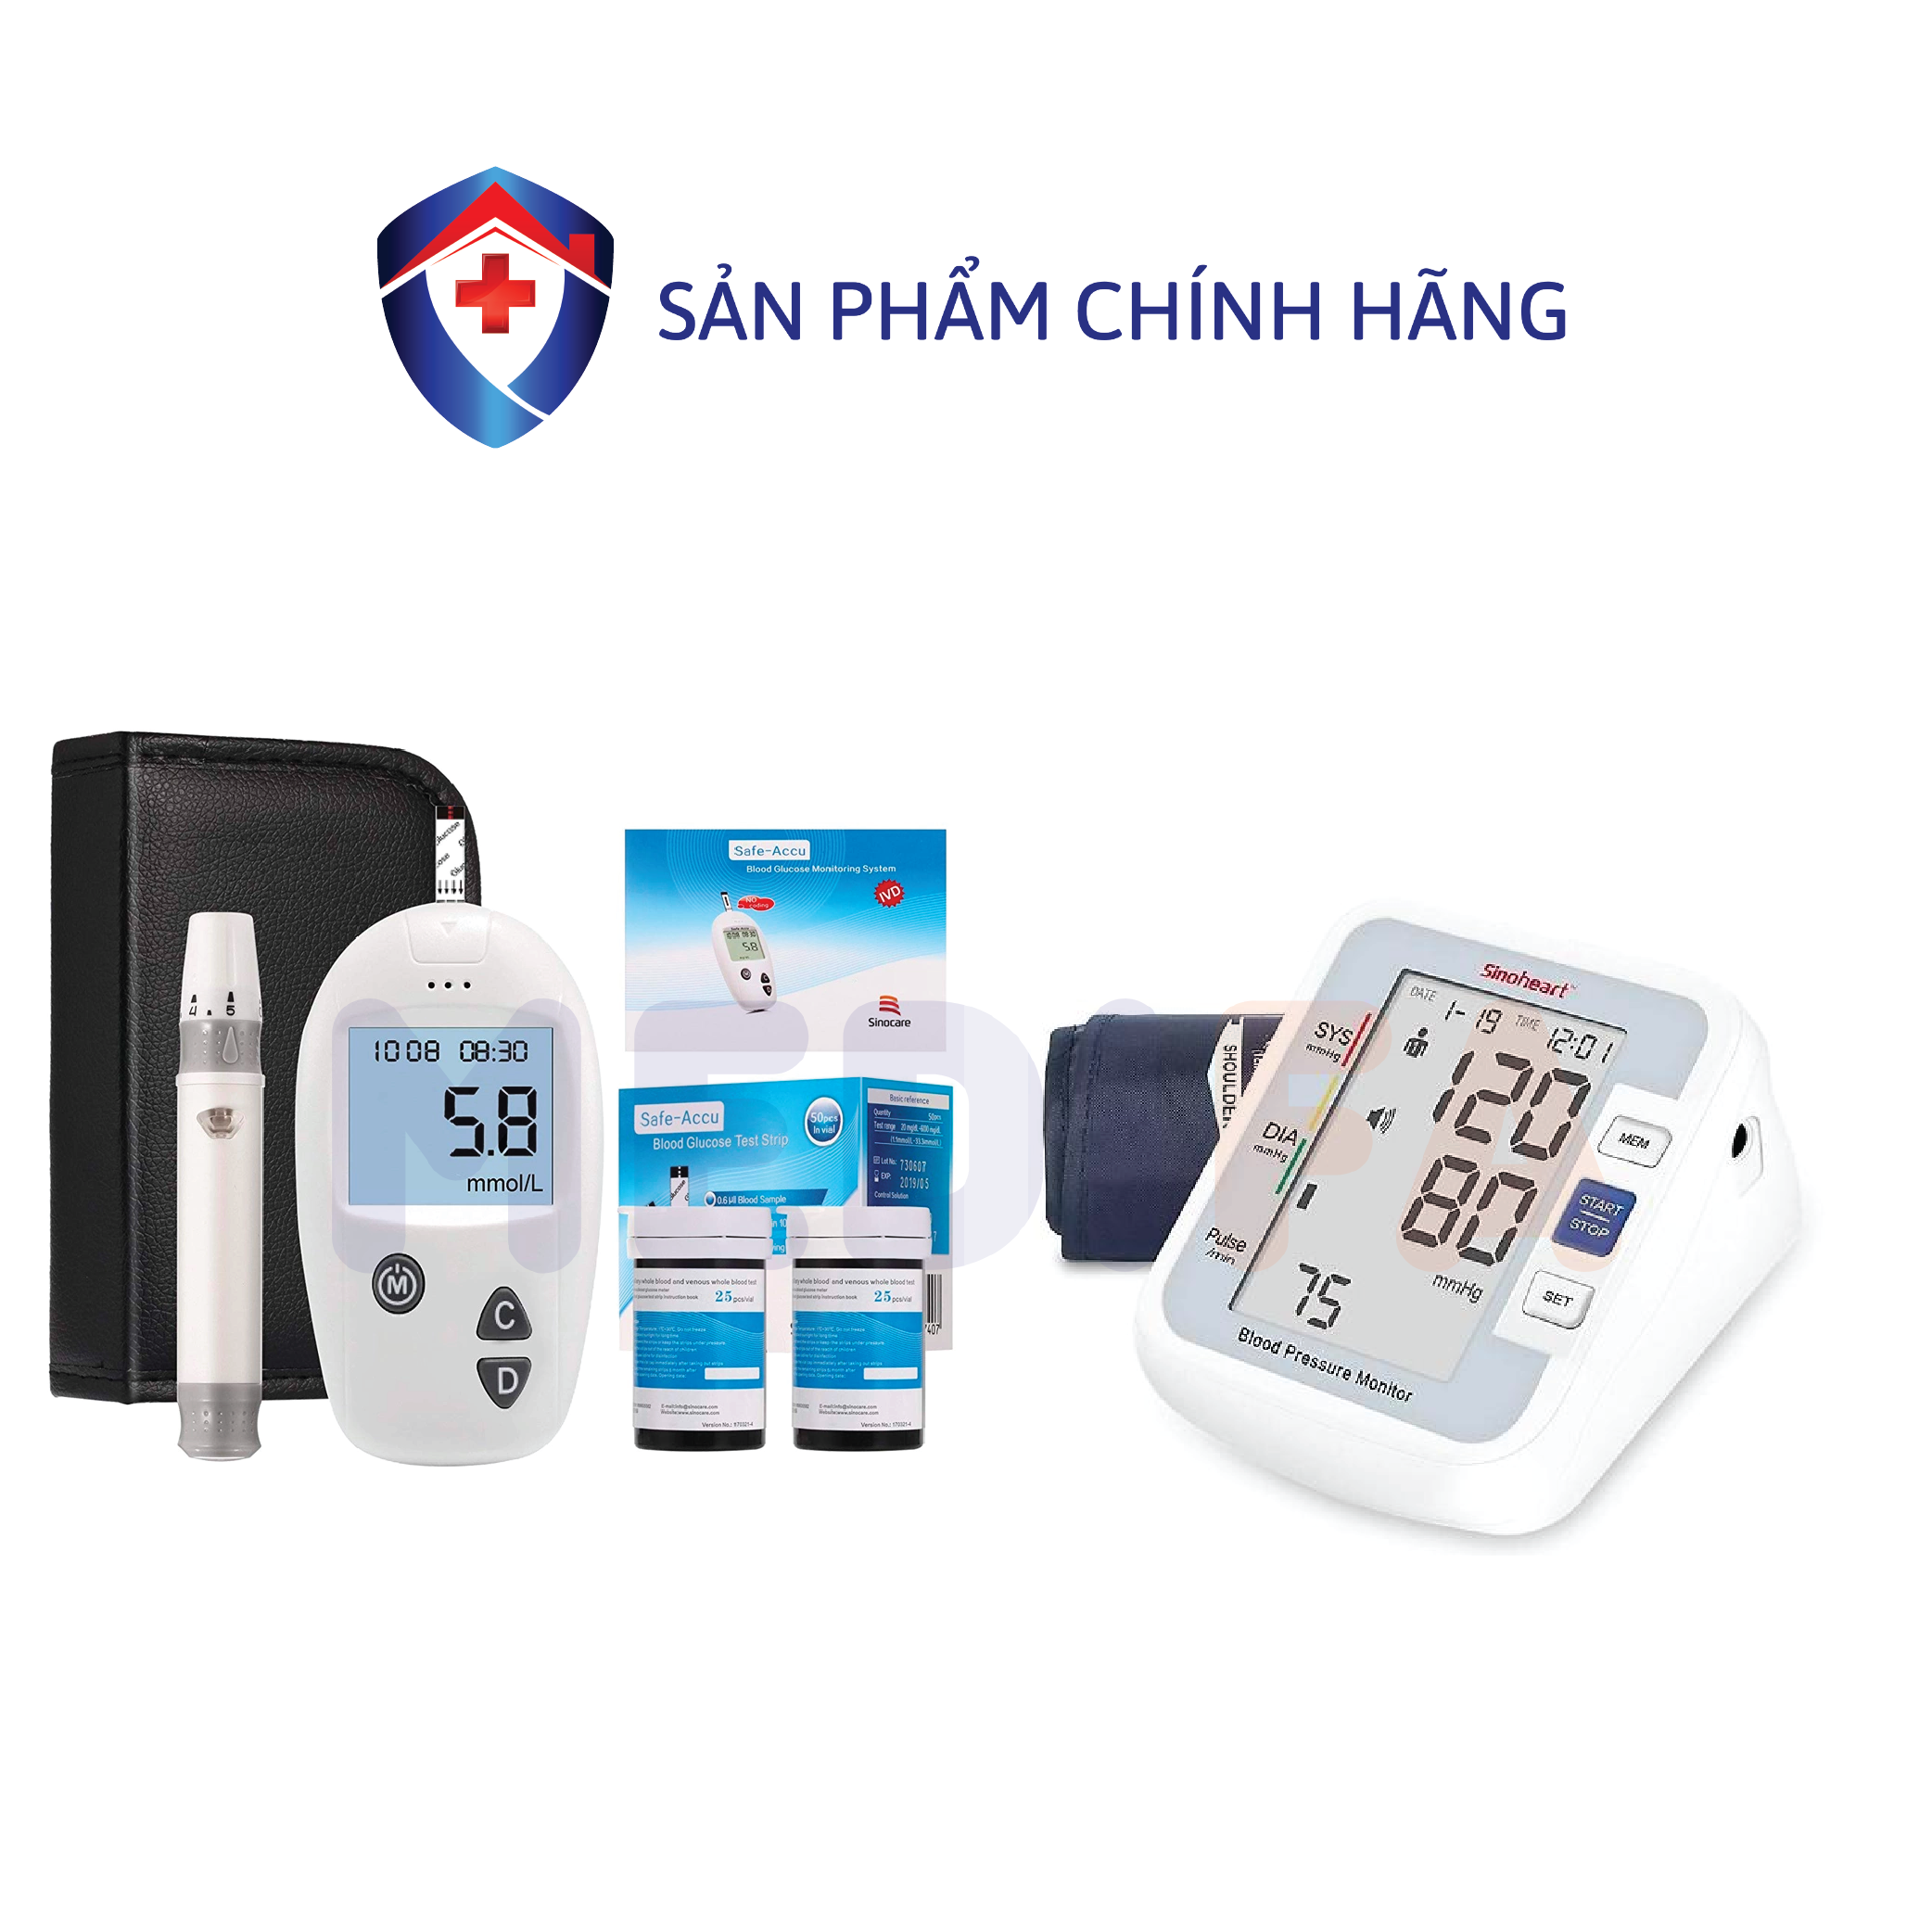 Bộ máy đo huyết áp Sinoheart và máy đo đường huyết Safe accu - Sinocare Đức